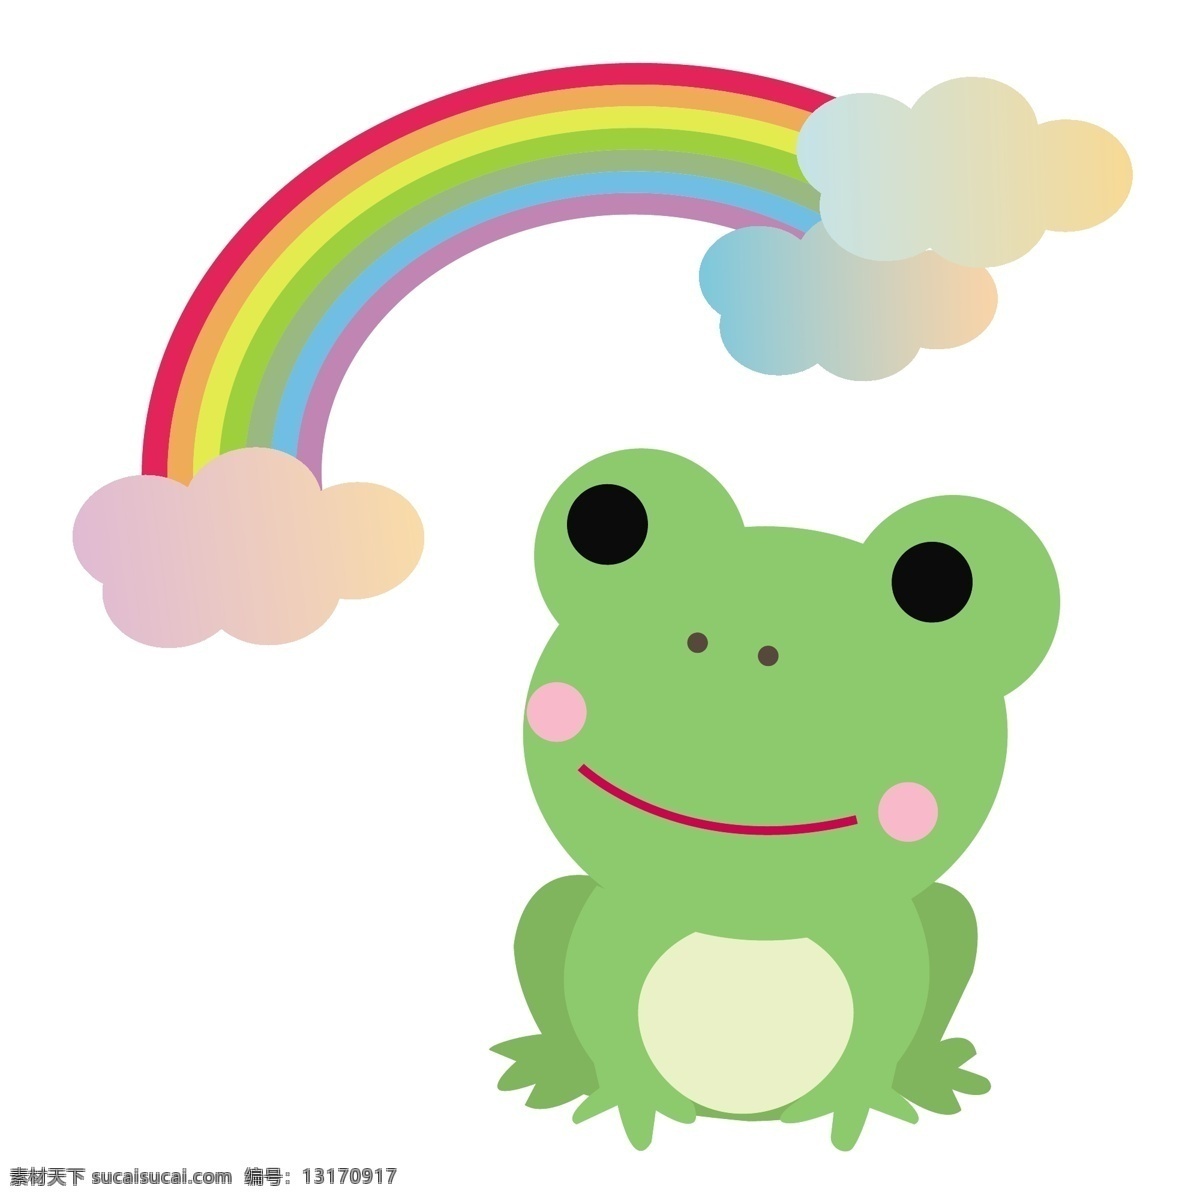 青蛙 七彩虹 彩虹 彩虹云 矢量青蛙 矢量彩虹 绿青蛙 动物青蛙 七色彩虹 动漫动画 风景漫画